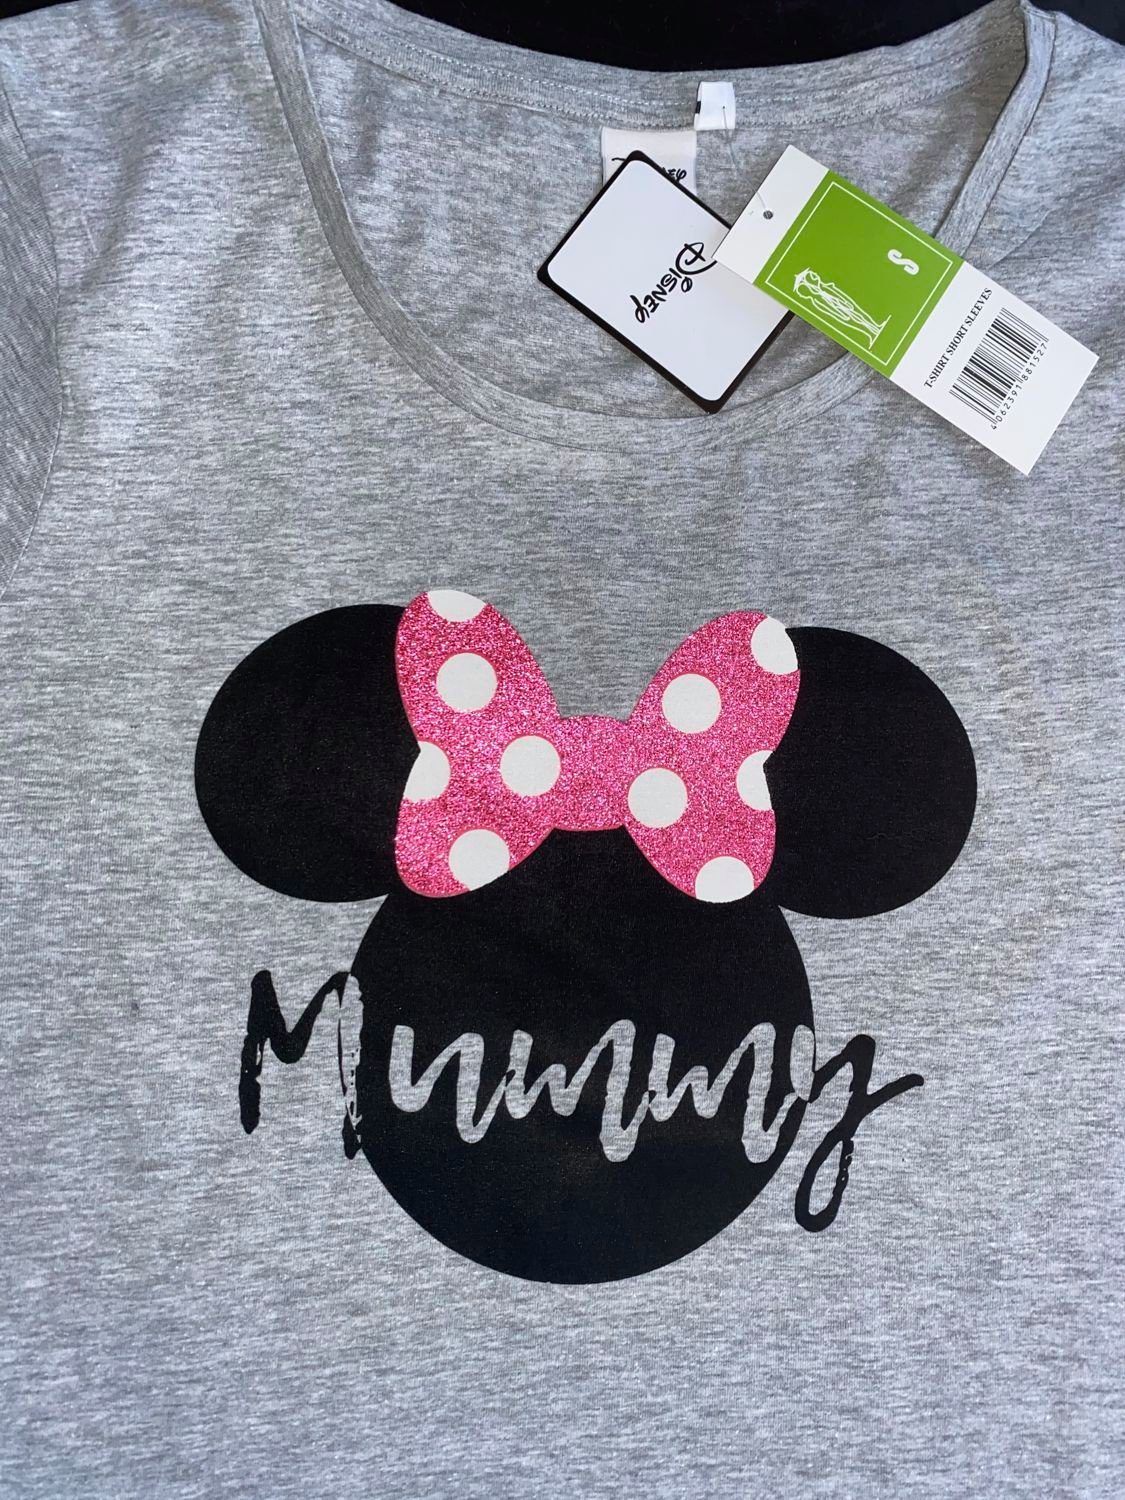 Disney Minnie Mouse T-Shirt Minnie für Maus Mouse S T-Shirt Weiß Muttertag Damen MUMMY M Schwangerschaft Entbindung Geburt Mütter, Mini Gr. XL L